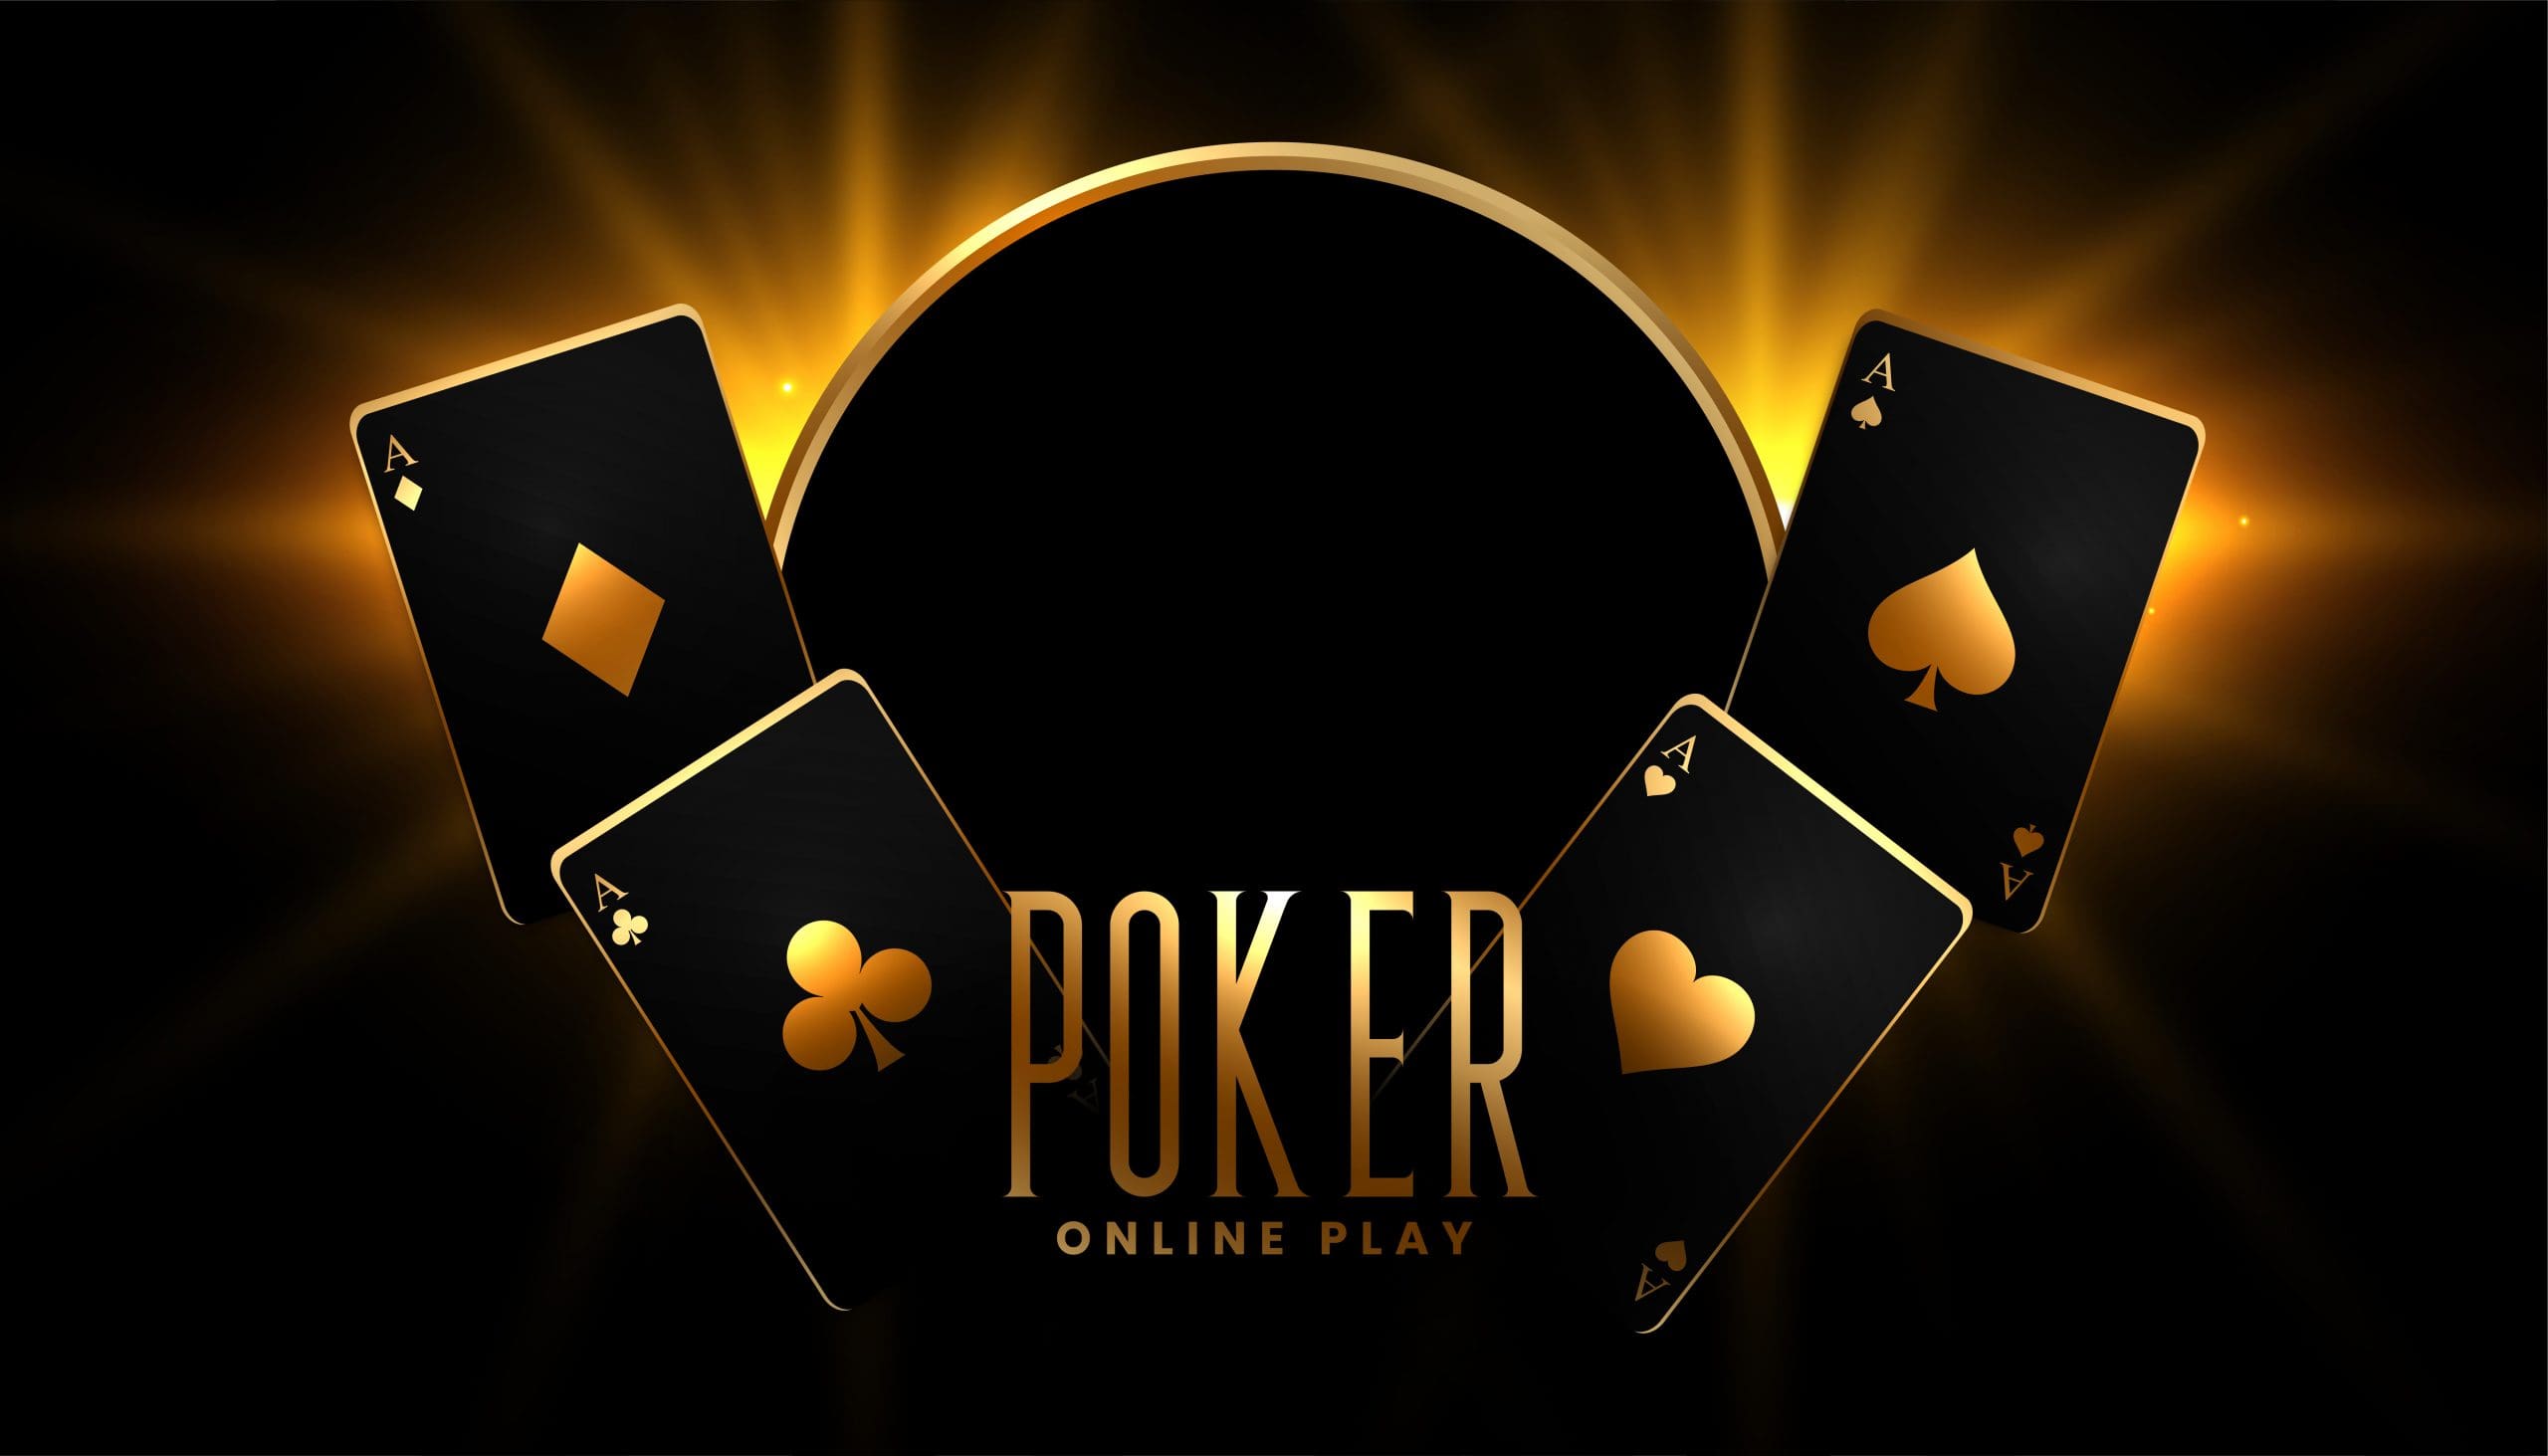 Покер: главные понятия и термины